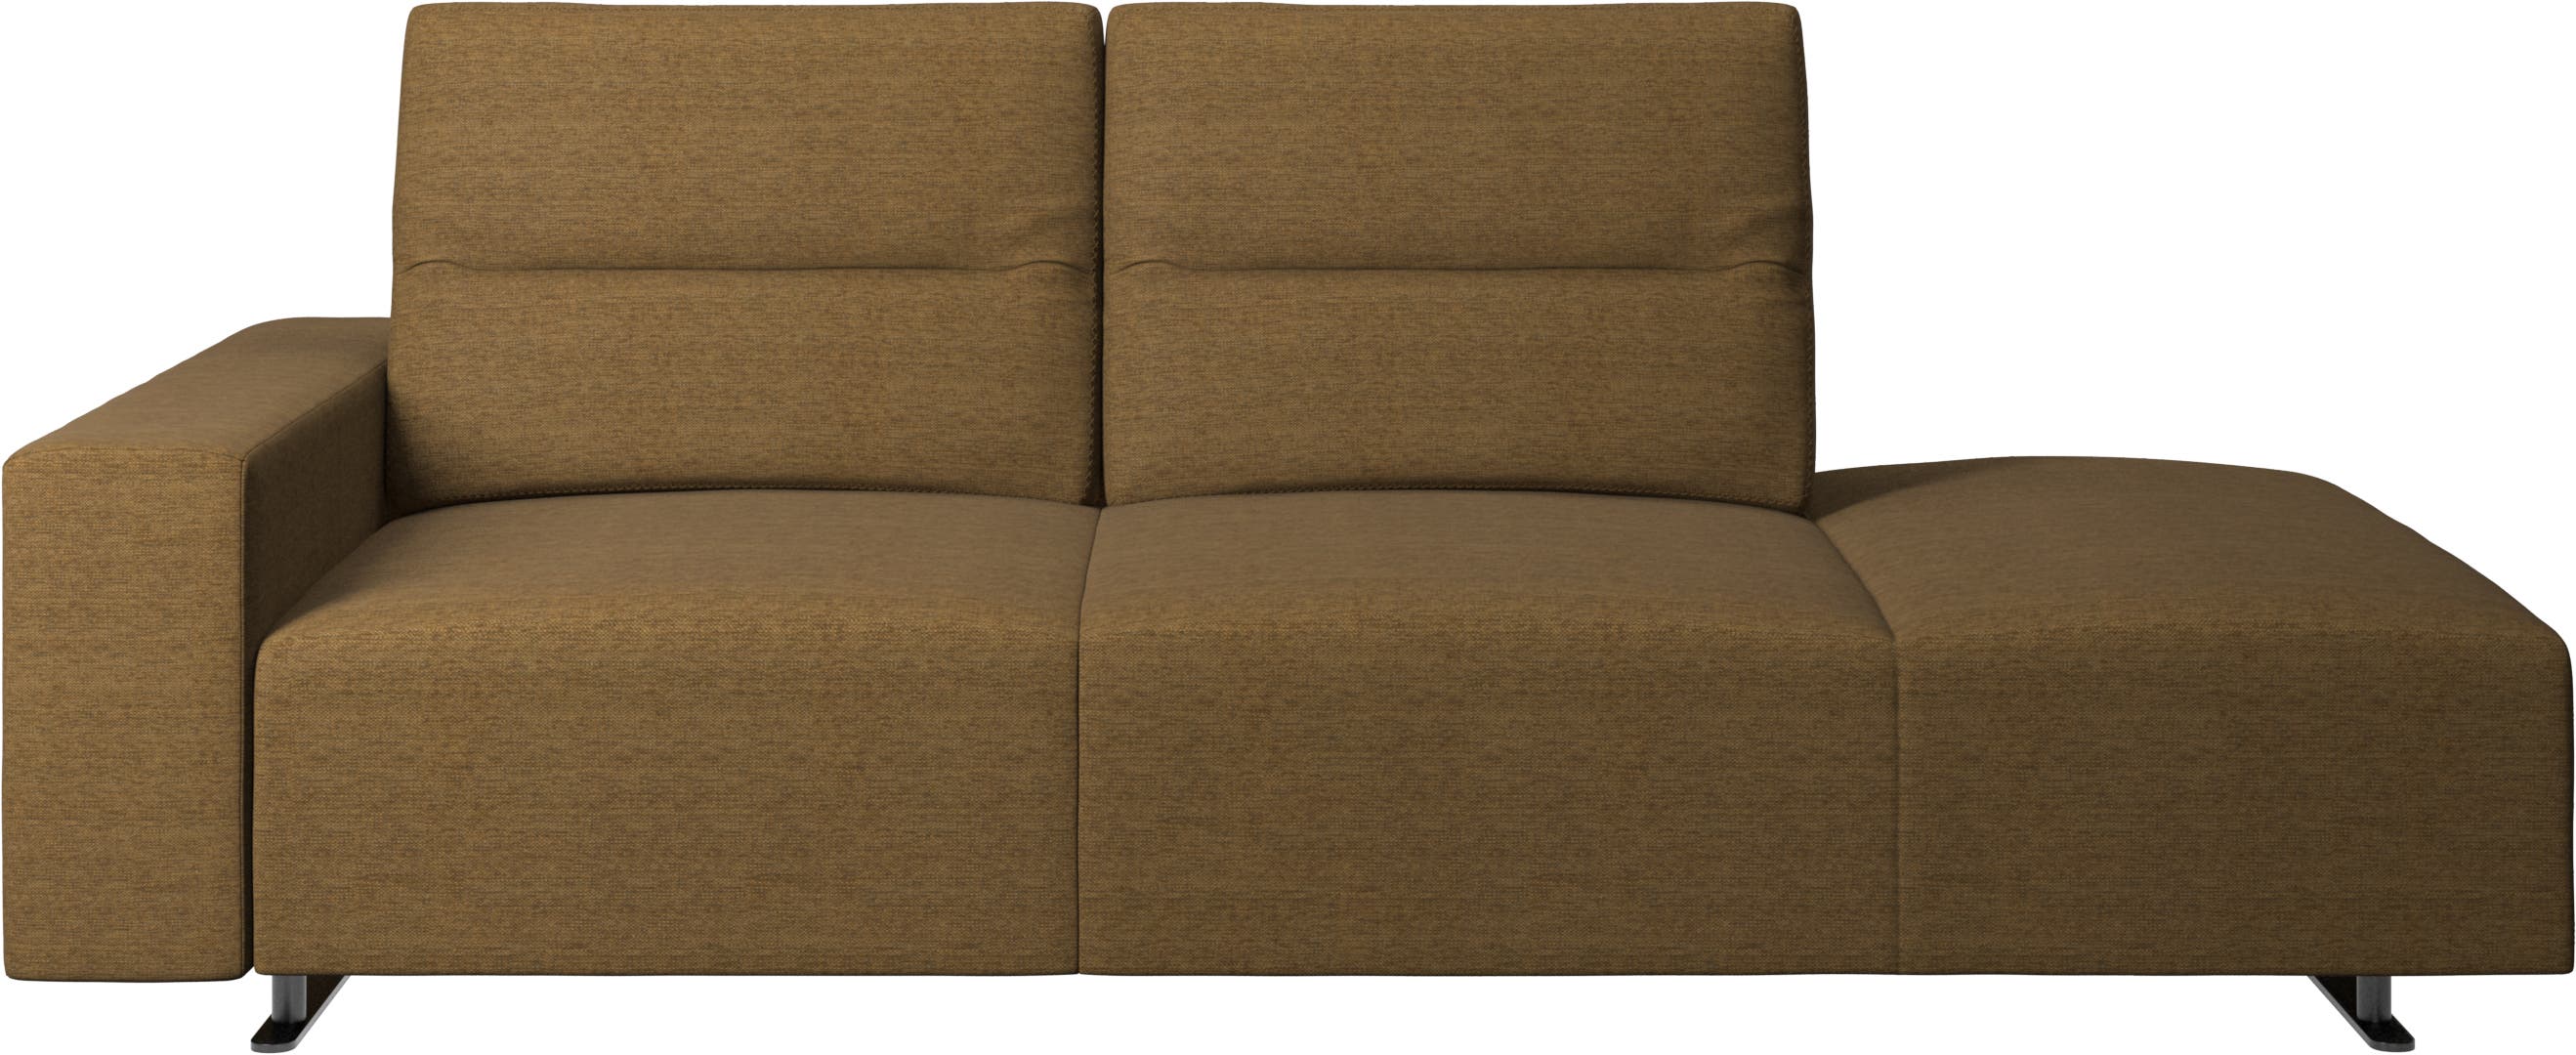 Sofá Hampton com encosto ajustável com módulo de descanso do lado direito, armazenamento e apoio de braços lado esquerdo